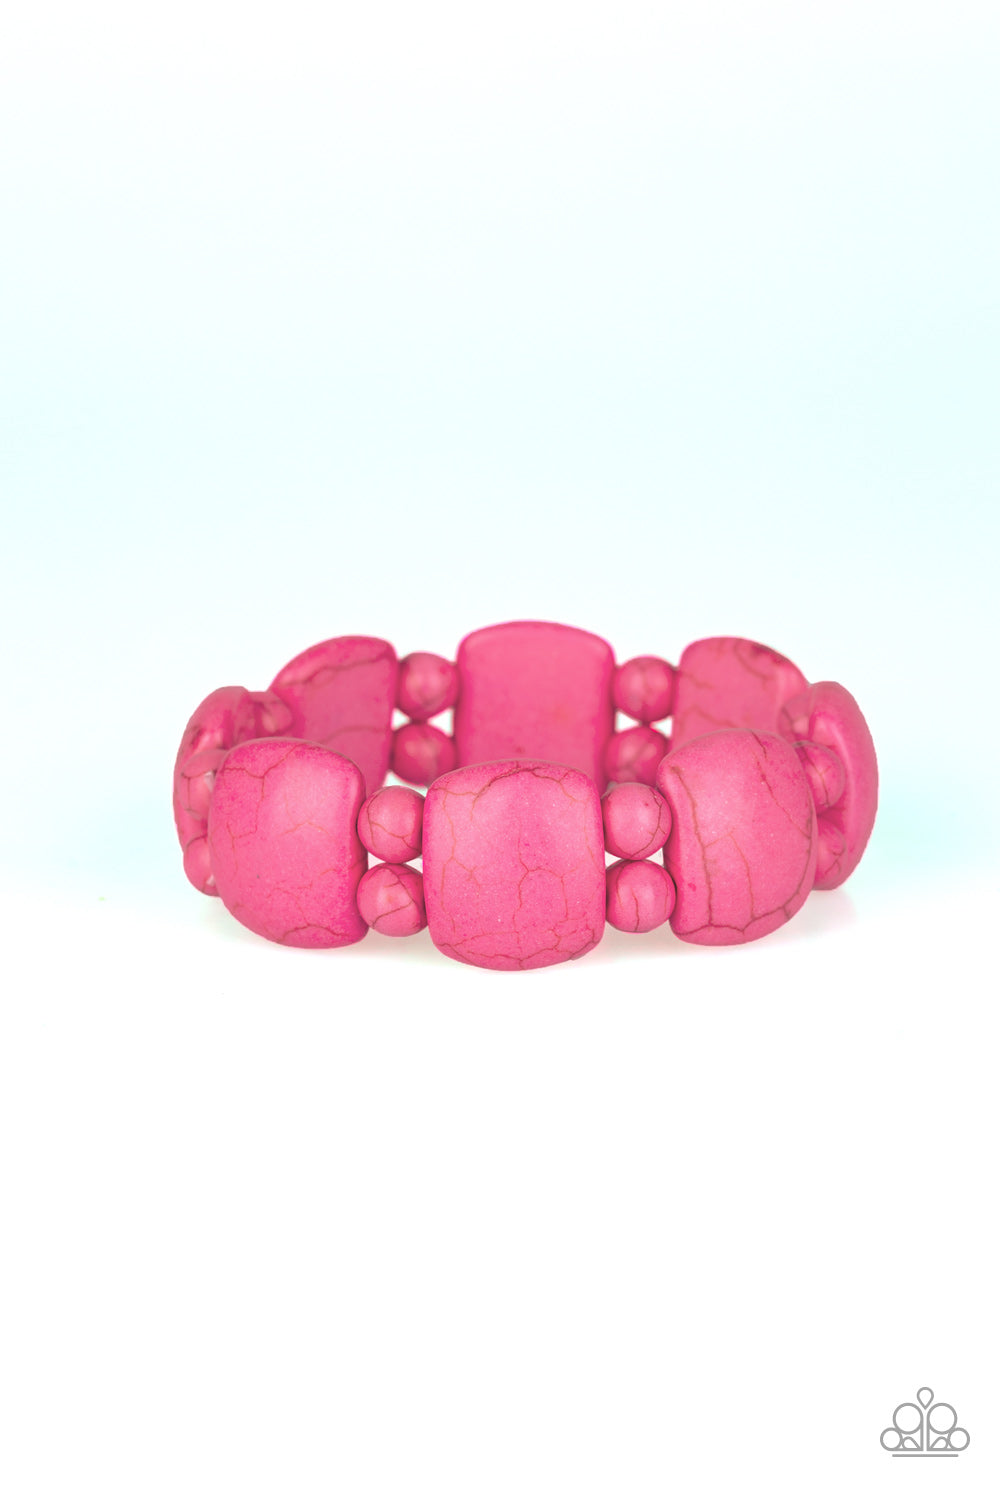 Dont Be So NOMADIC! Pink Paparazzi Bracelets Cashmere Pink Jewels - Cashmere Pink Jewels & Accessories, Cashmere Pink Jewels & Accessories - Paparazzi